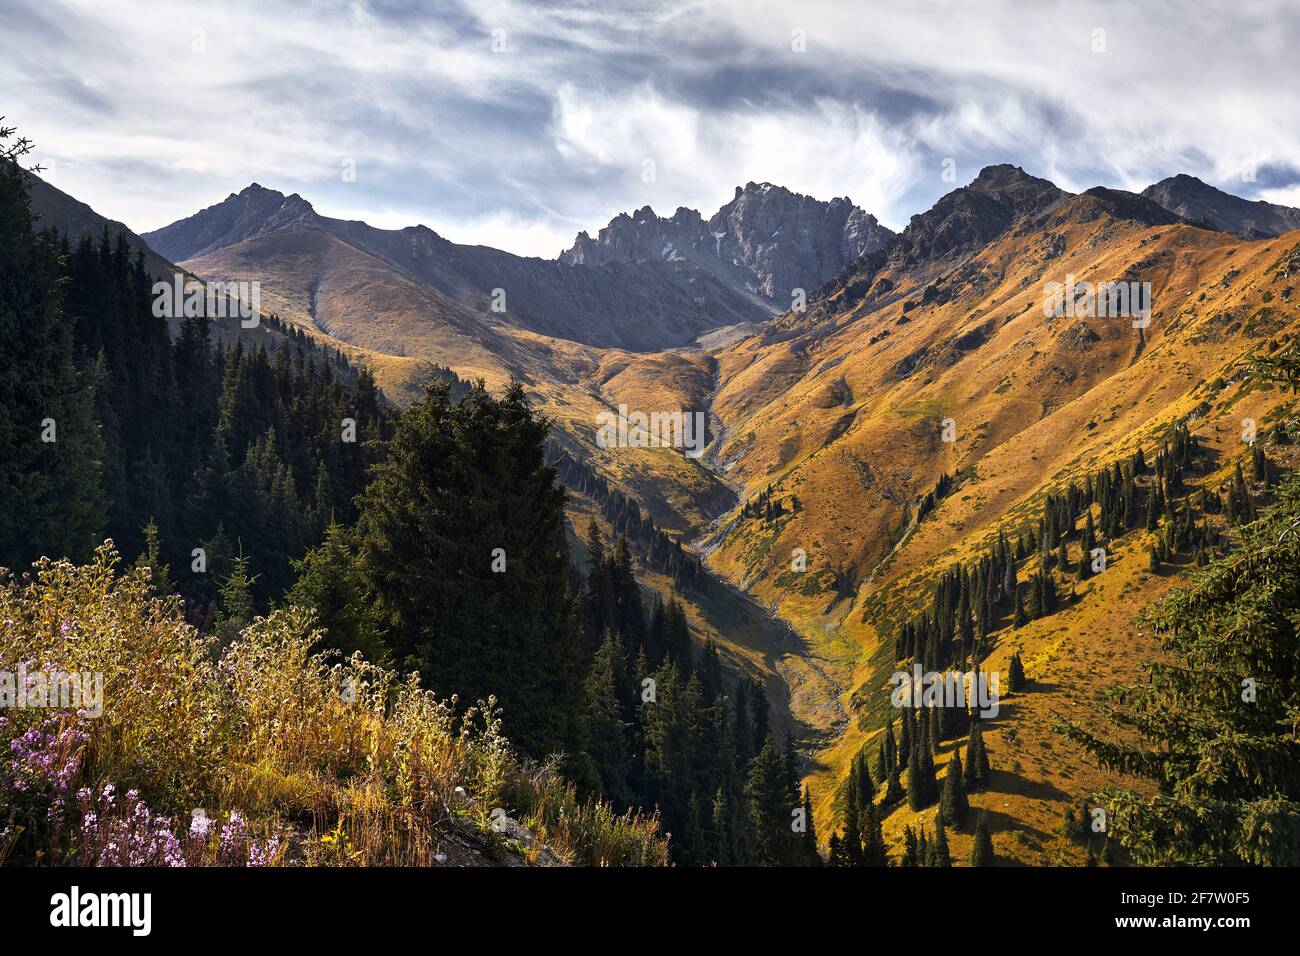 Vue aérienne de la vallée de montagne avec forêt luxuriante et rocky Peaks au Kazakhstan Banque D'Images